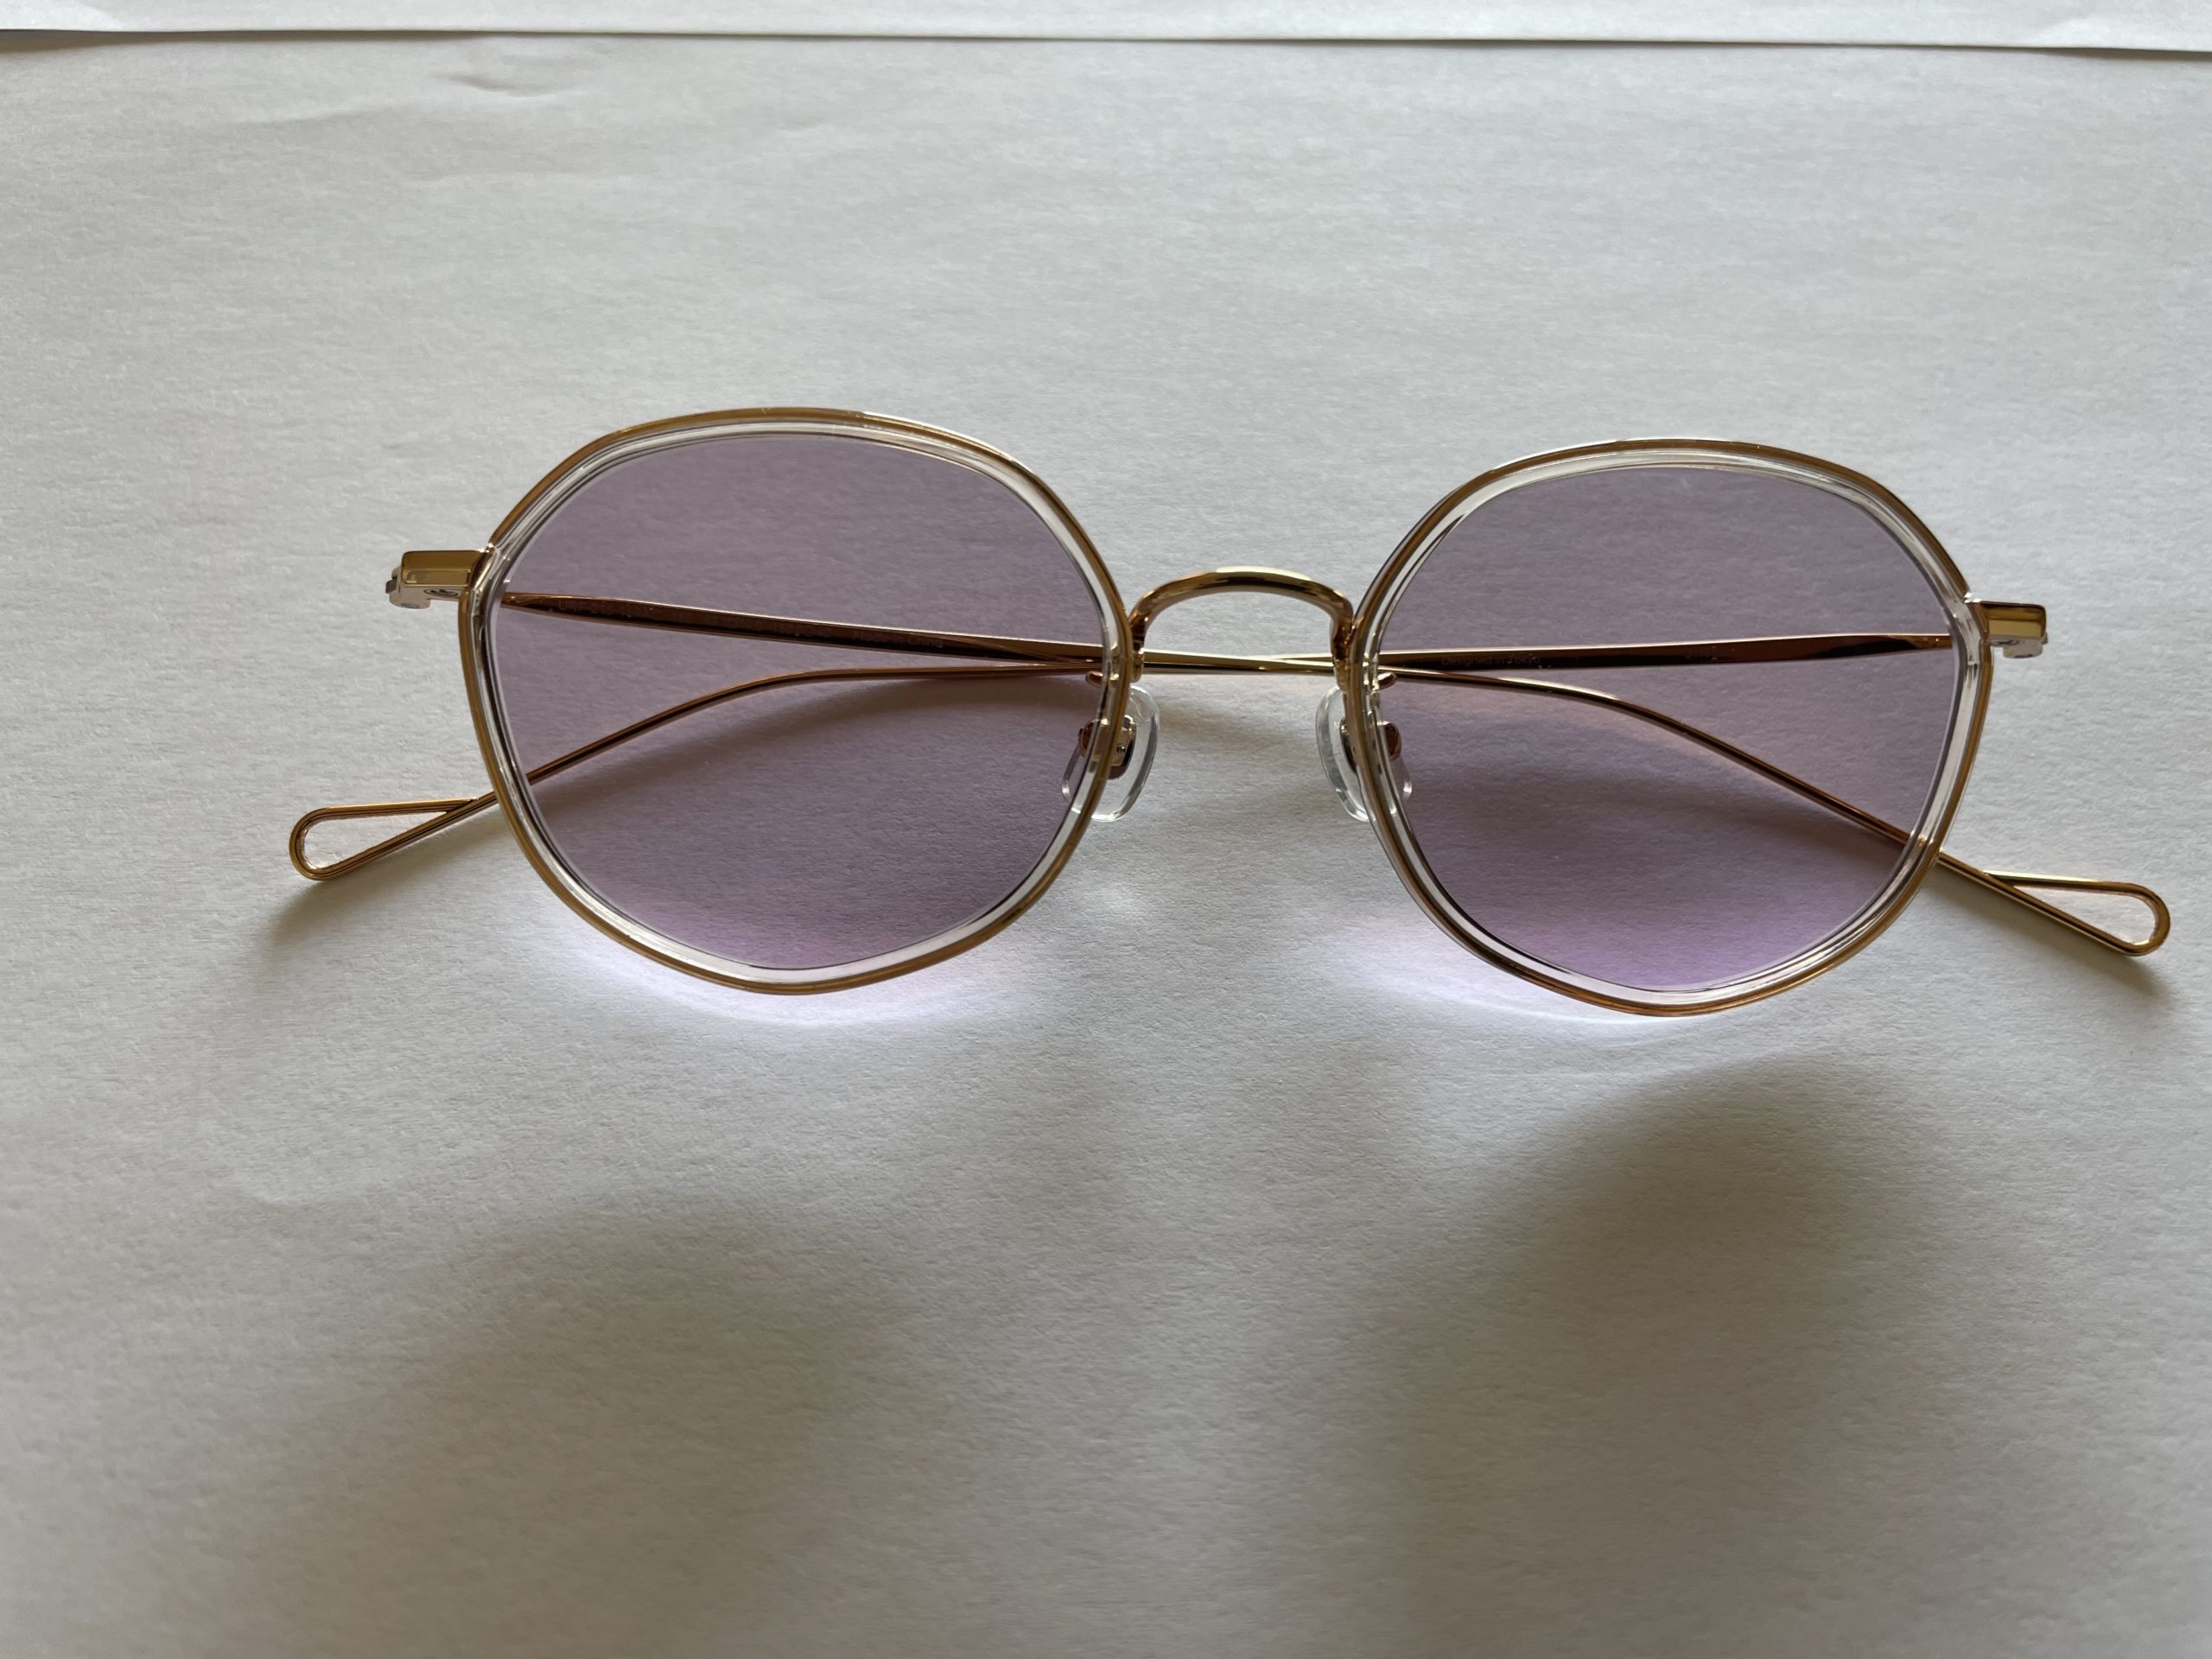 イノチグラスのイエローとシルバーの2種類を組み合わせたレンズのメガネ